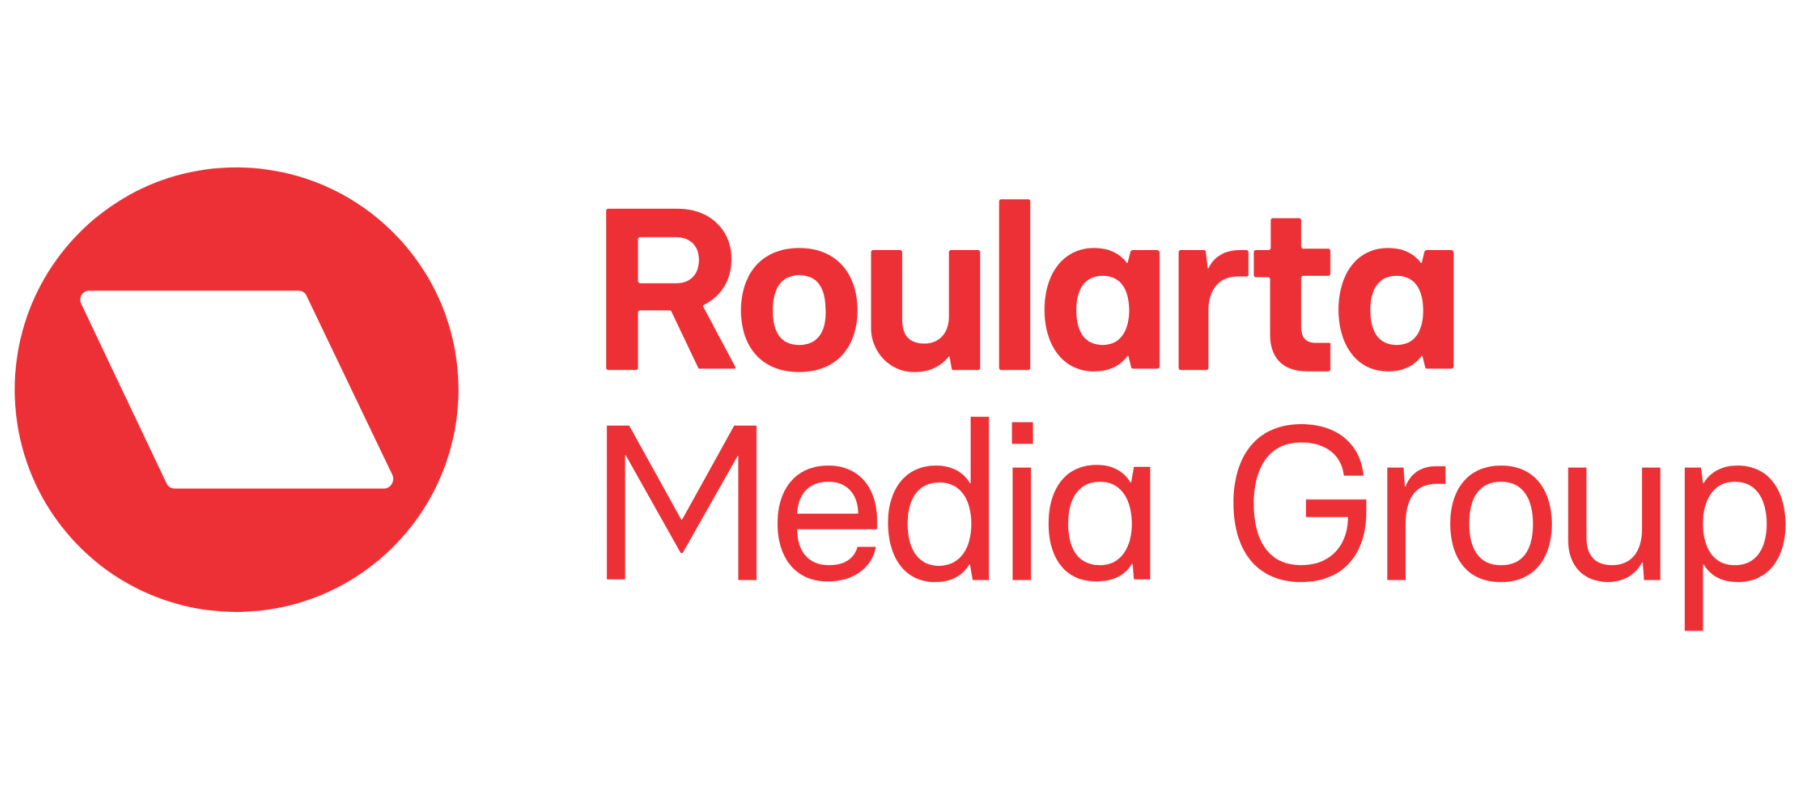 Roularta Media Group: omzet daalt met netto en ebit-verliezen